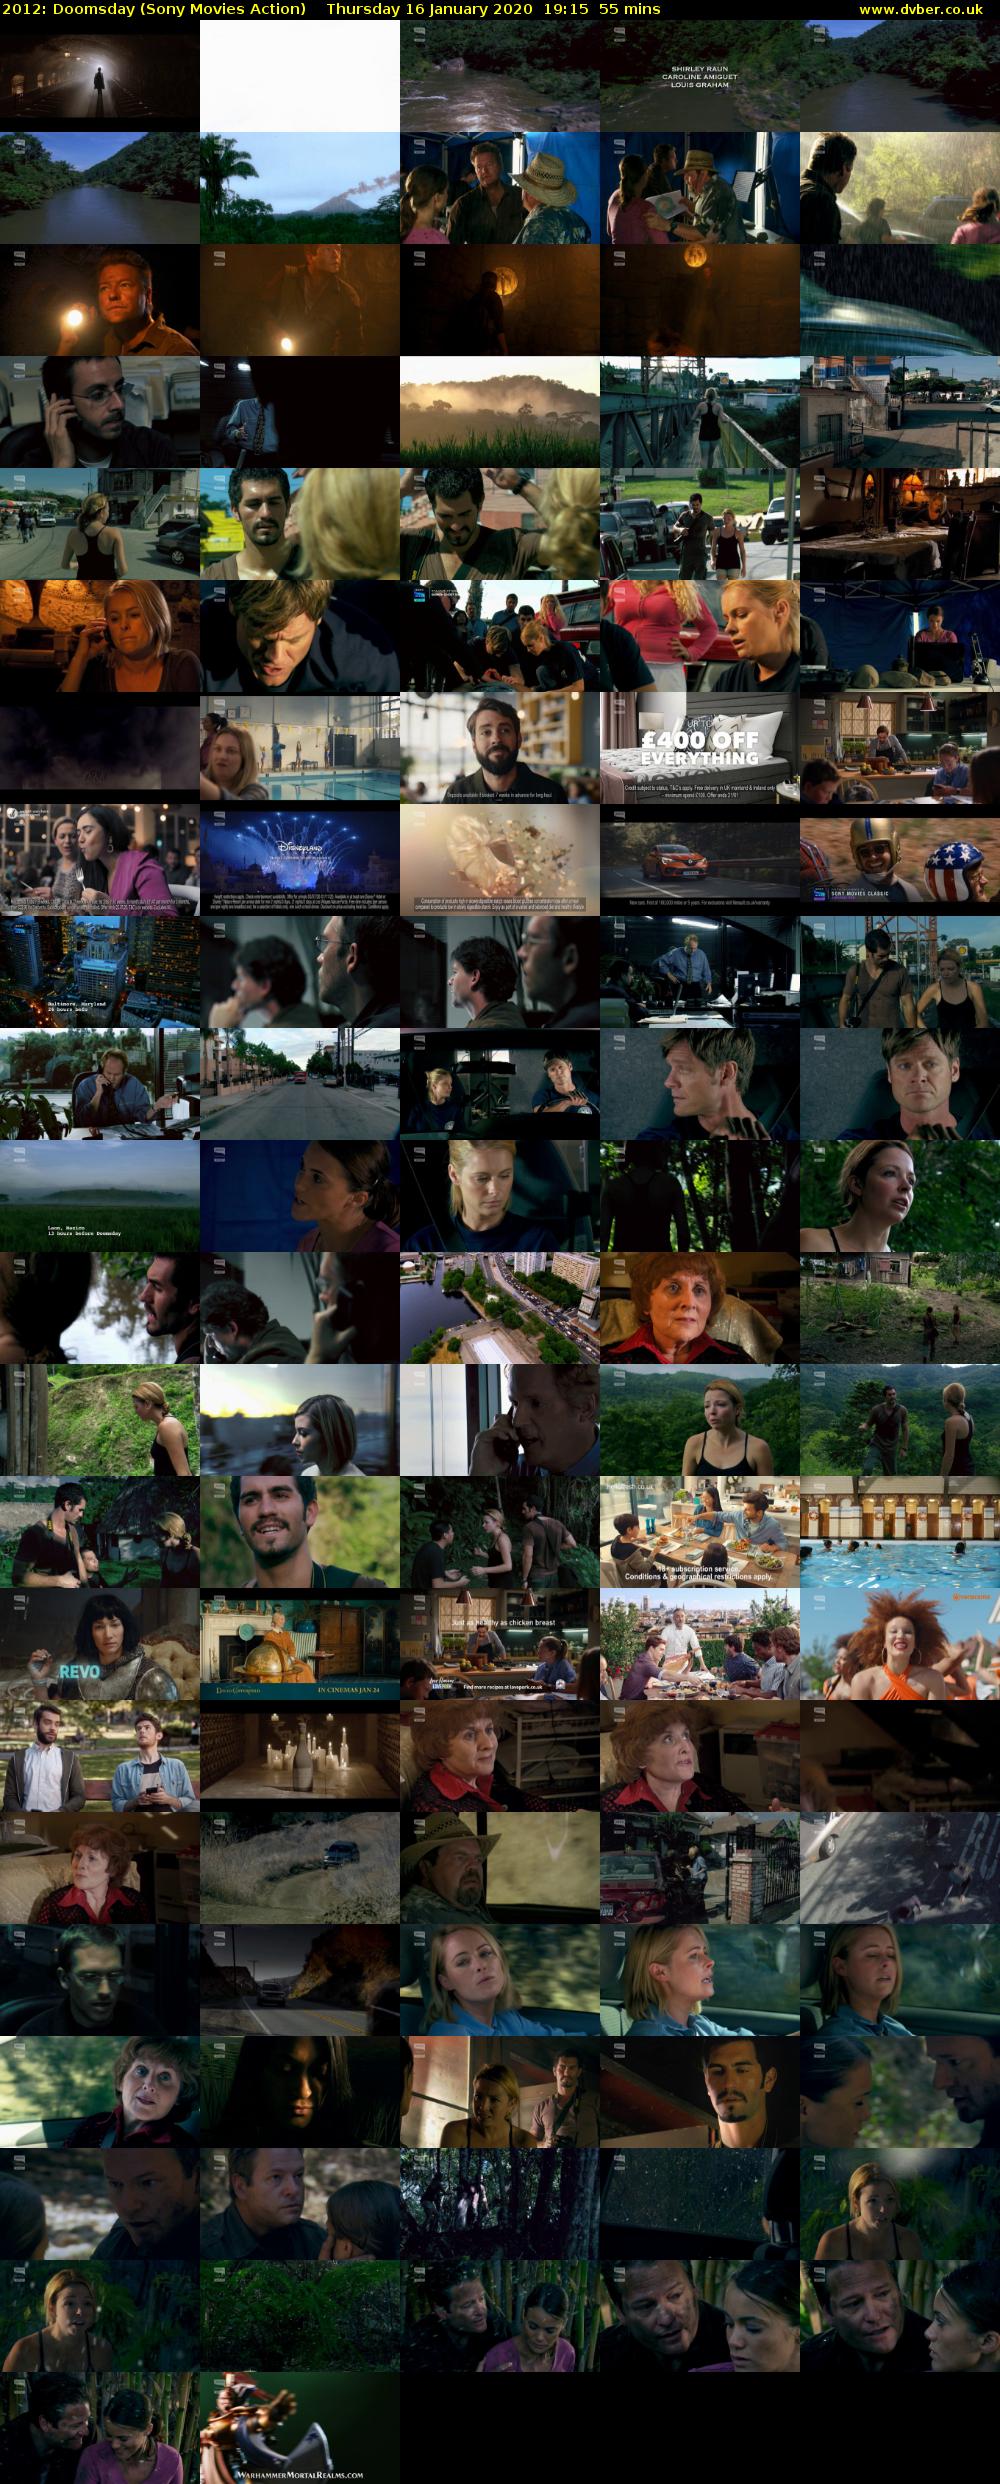 2012: Doomsday (Sony Movies Action) Thursday 16 January 2020 19:15 - 20:10